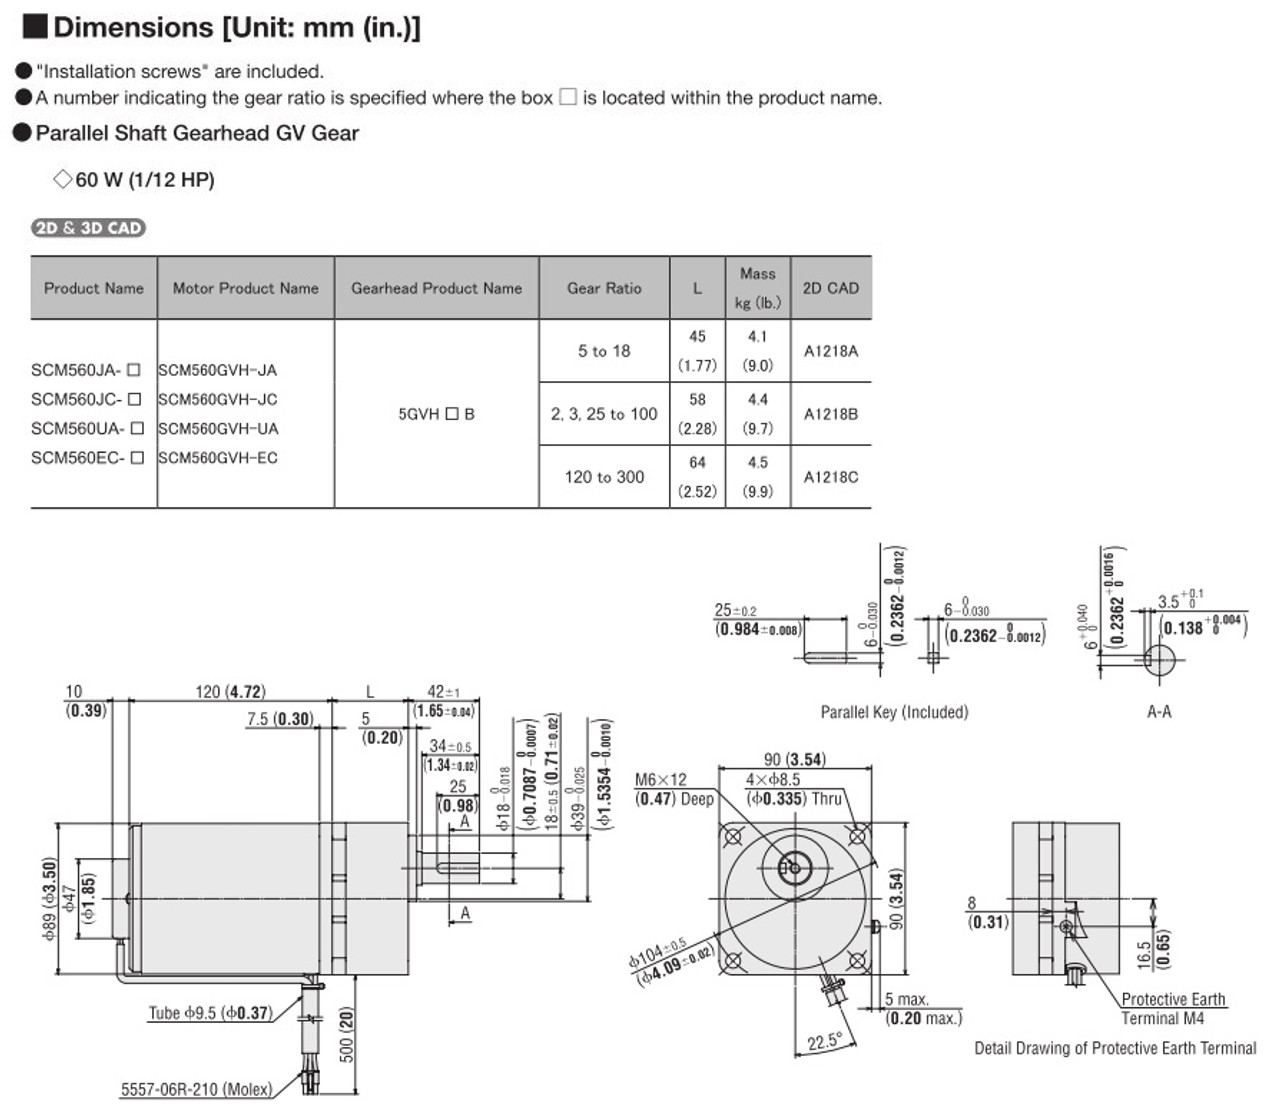 SCM560EC-150 - Dimensions